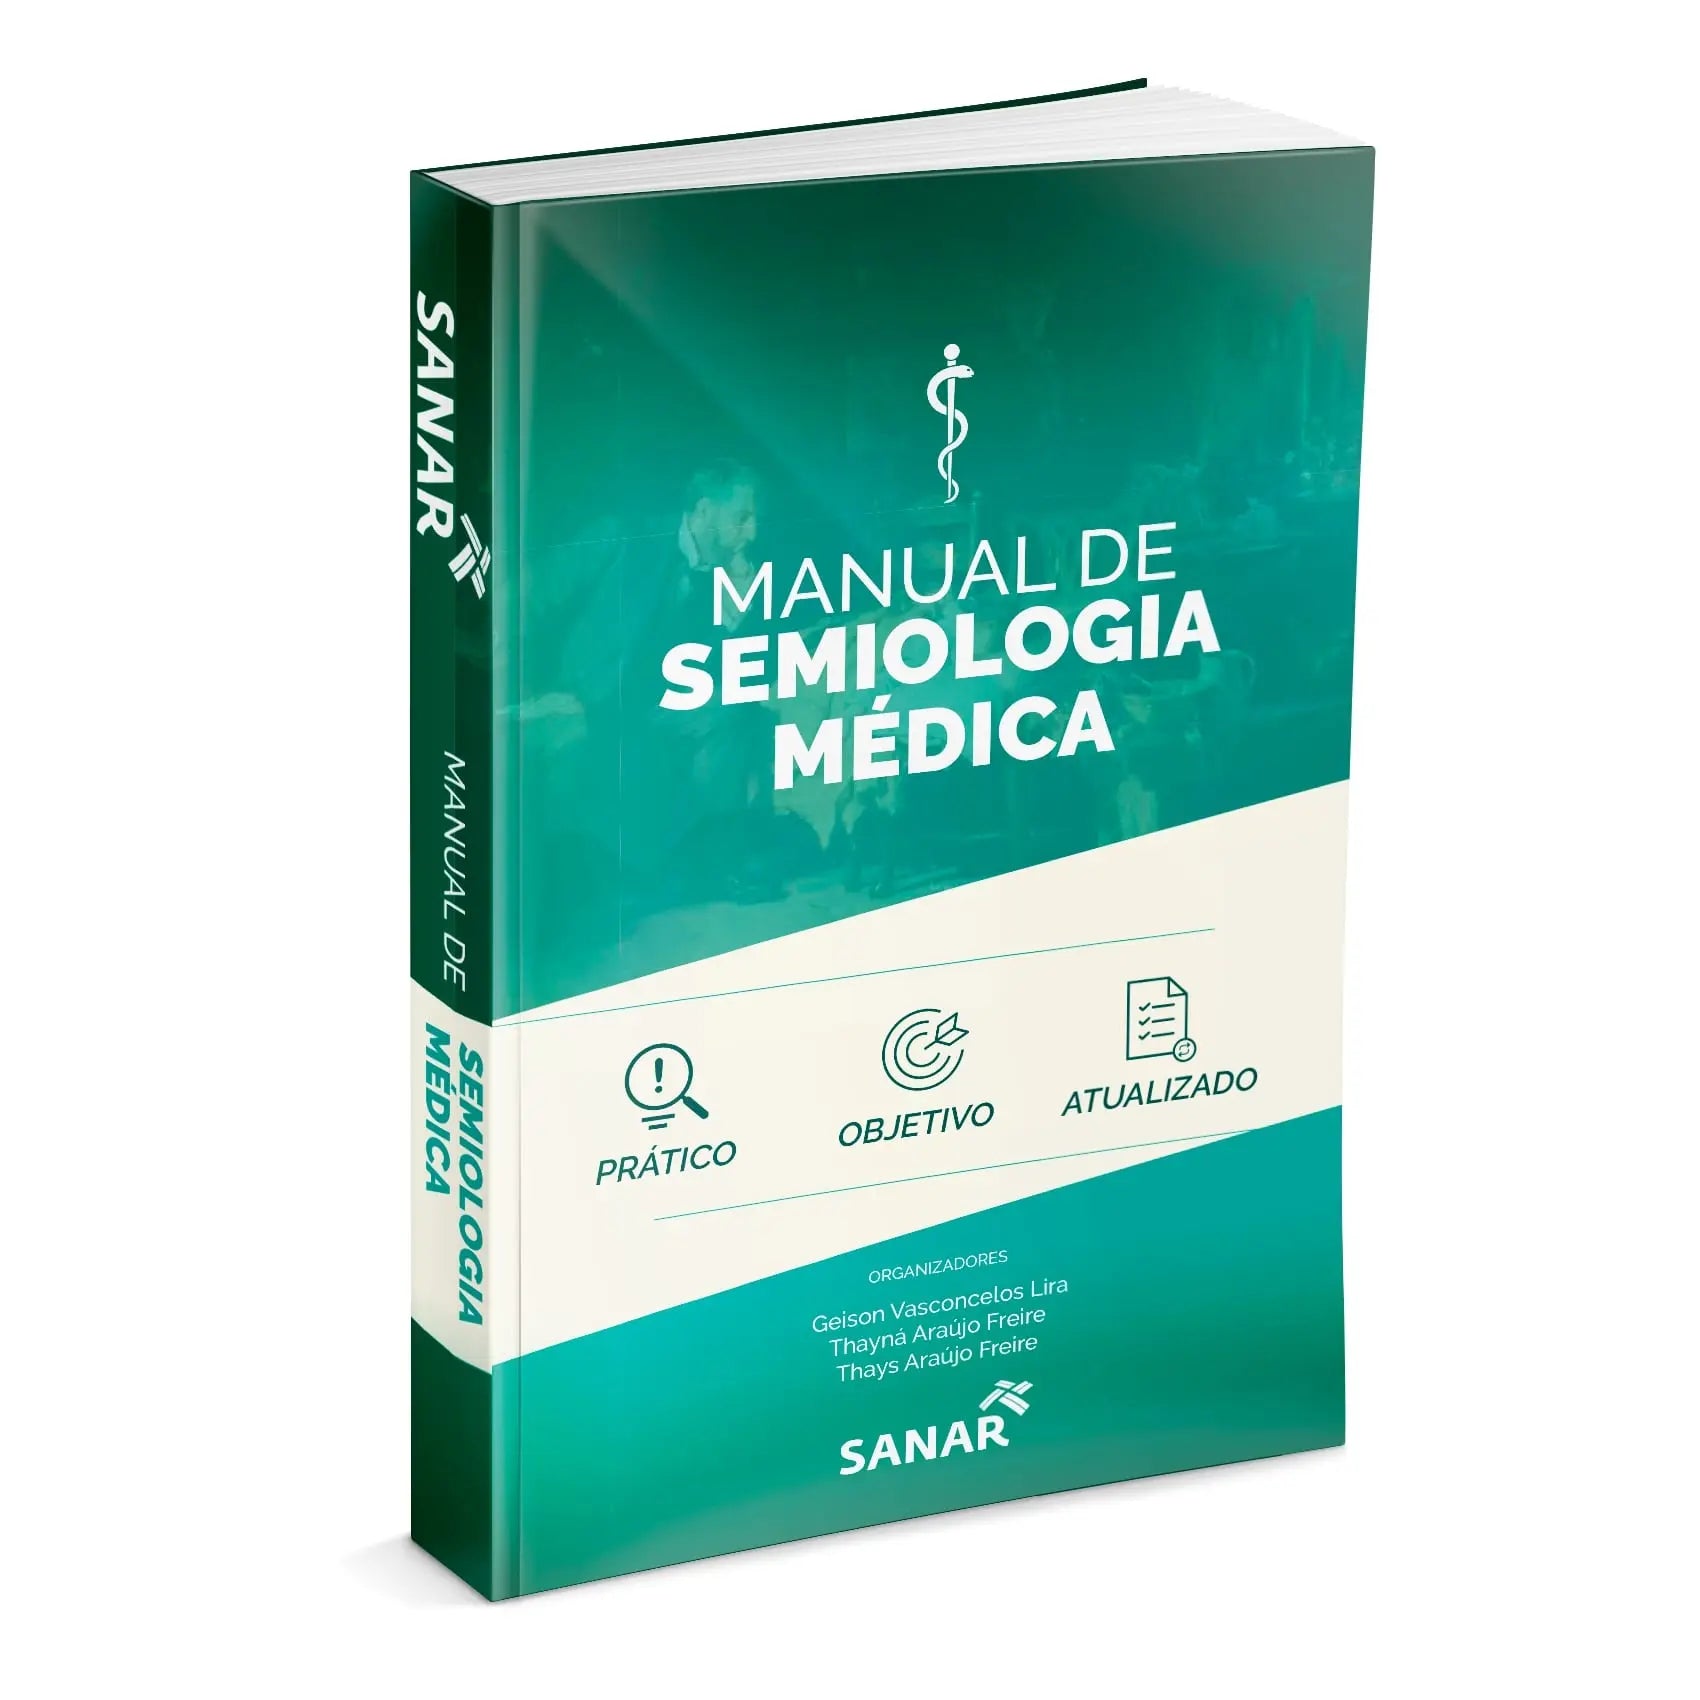 Imagem do livro Manual de Semiologia Médica